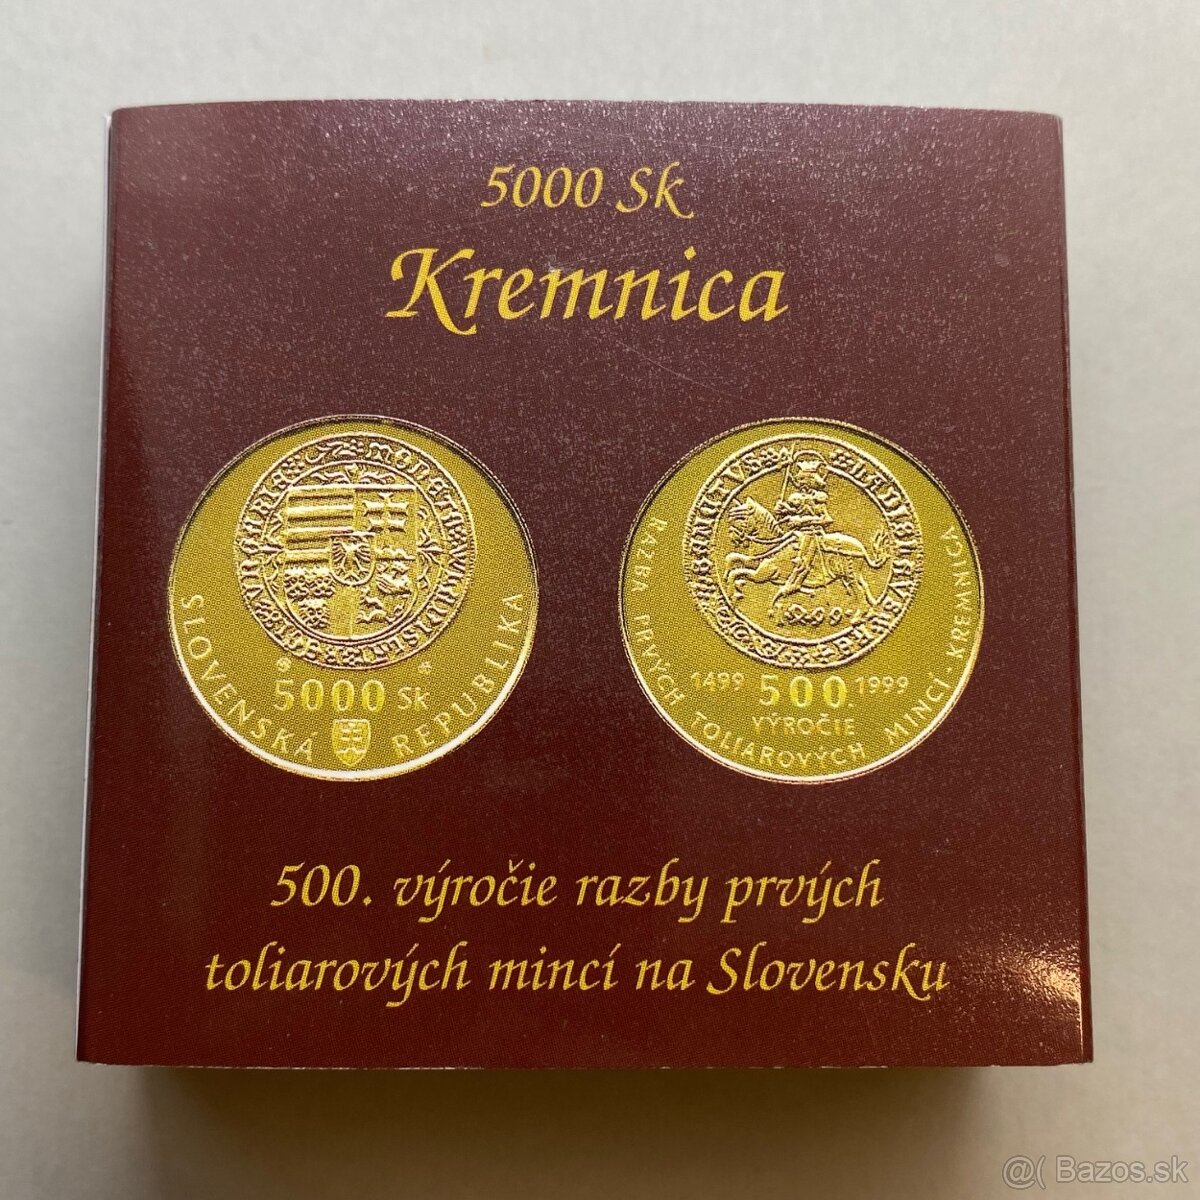 5000 Sk -  500.výročie razby prvých toliarových mincí